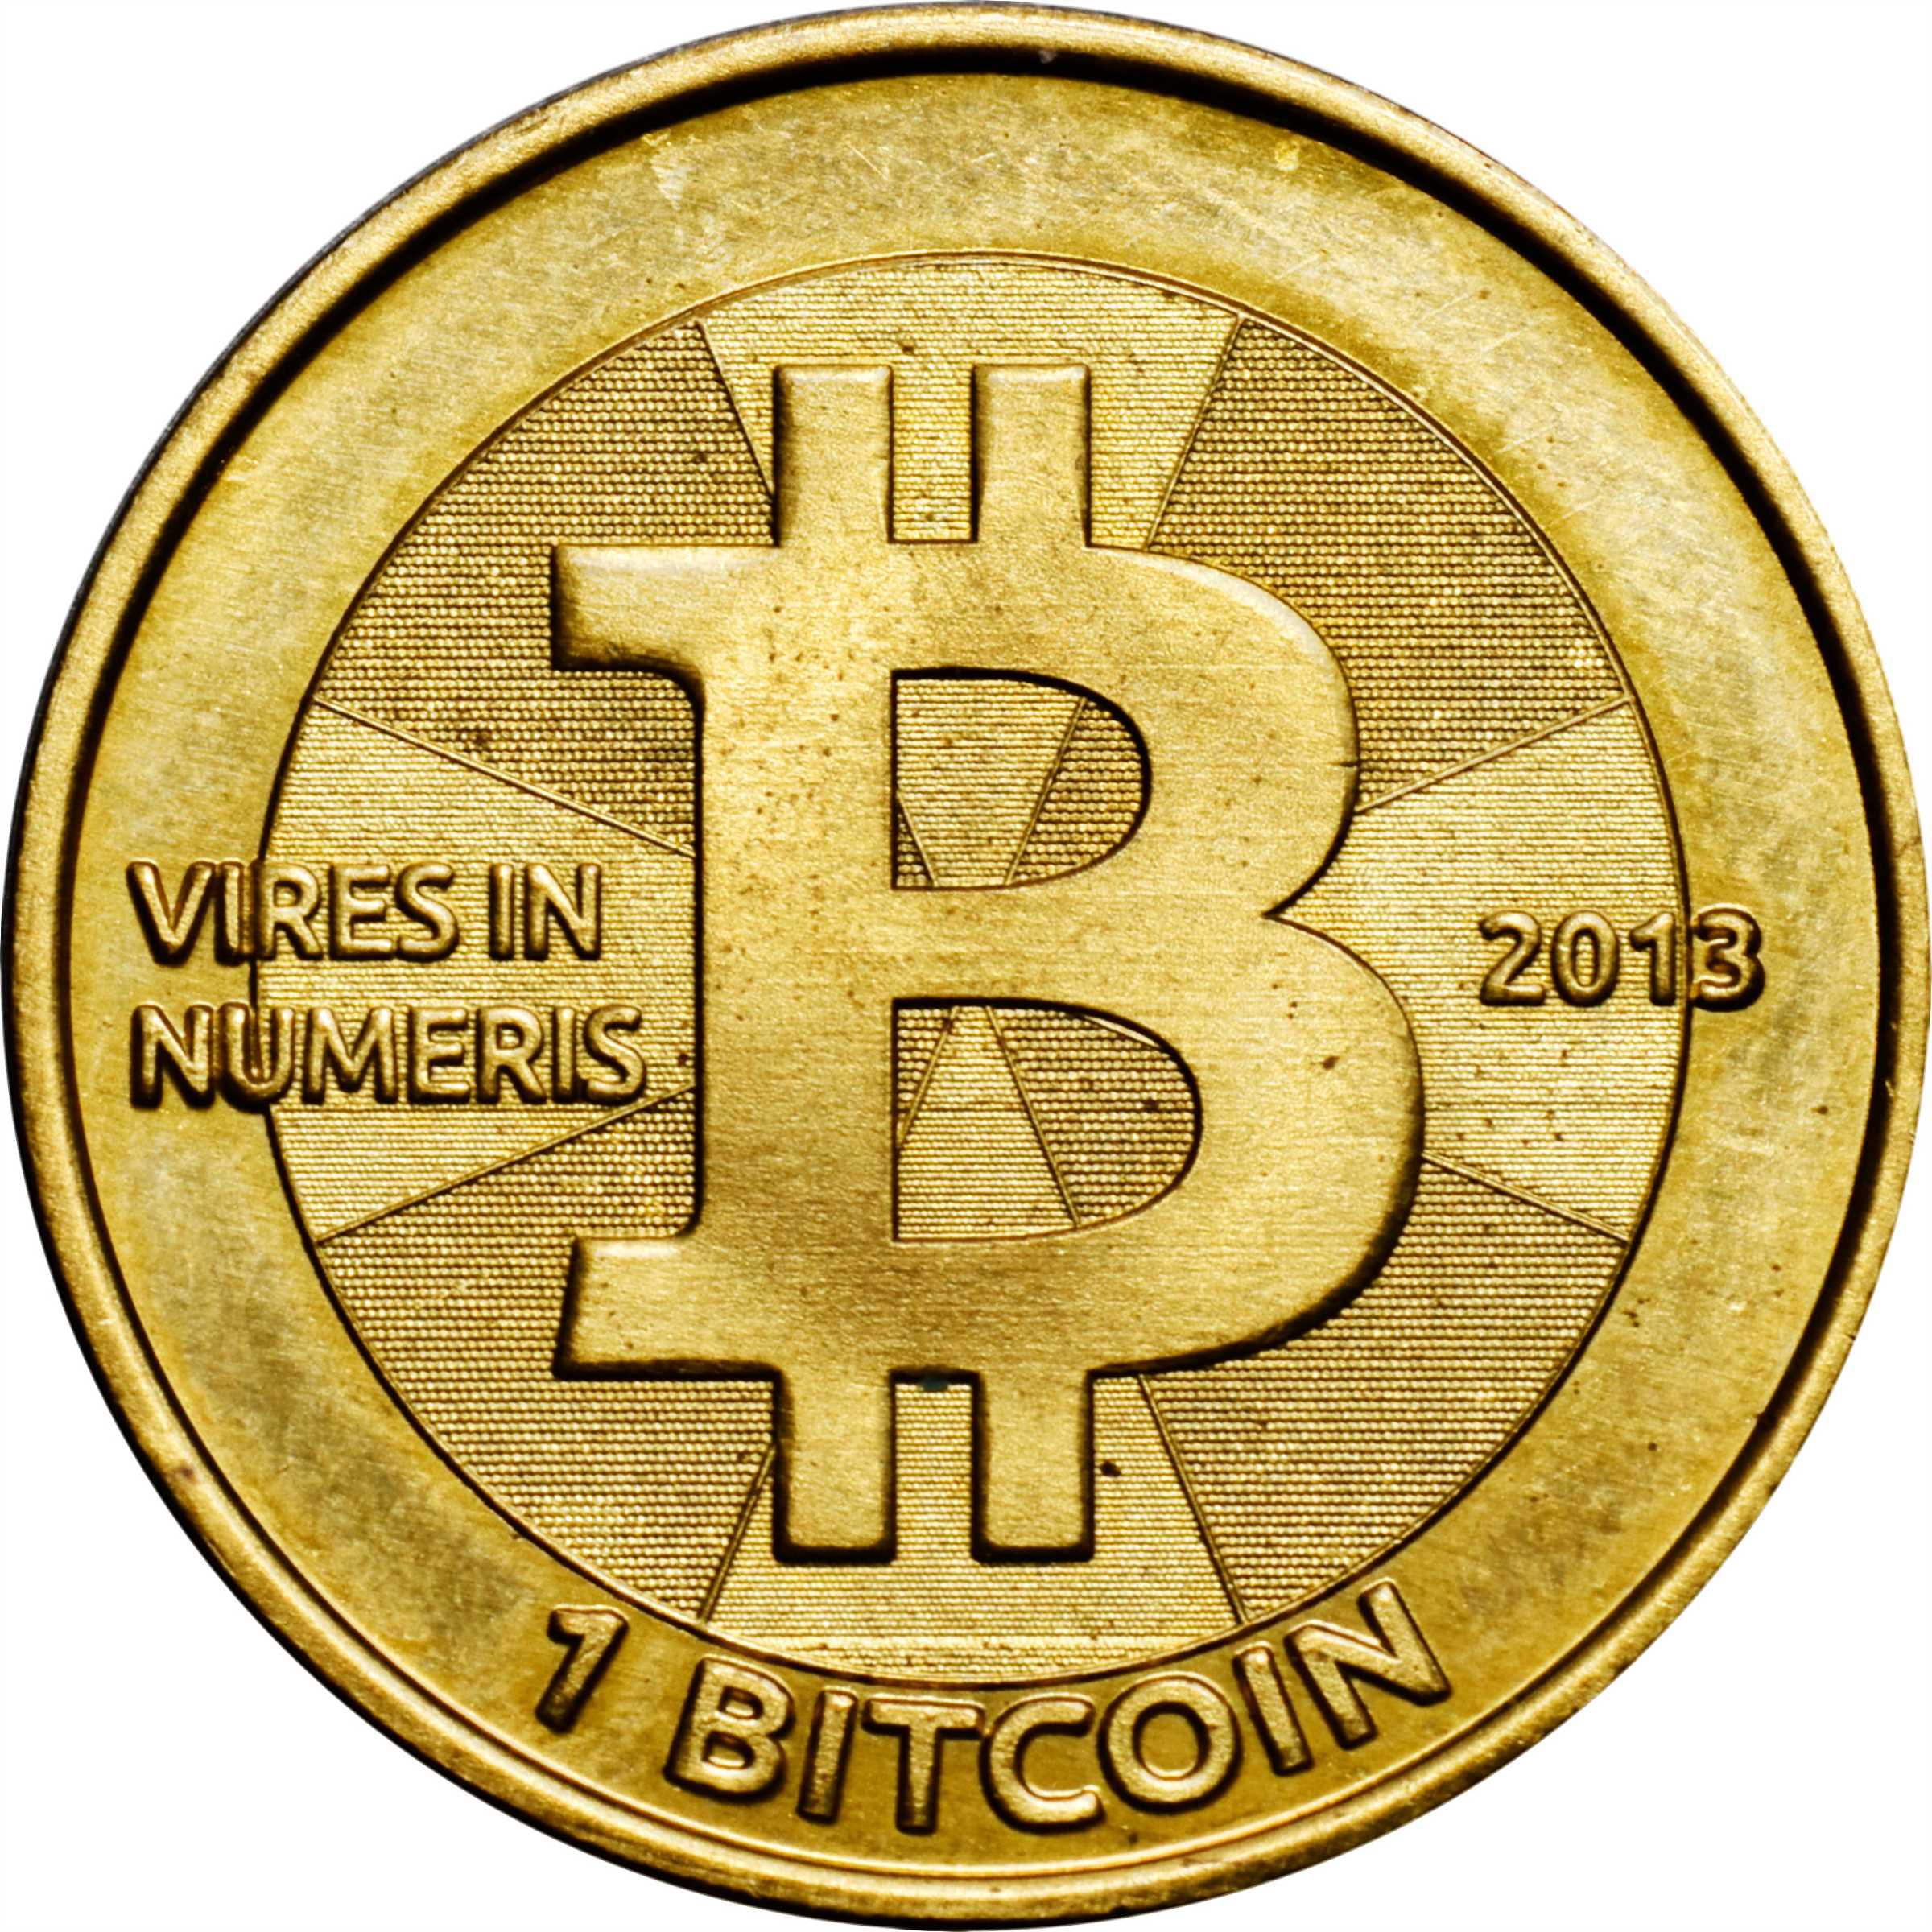 2013 casascius bitcoins